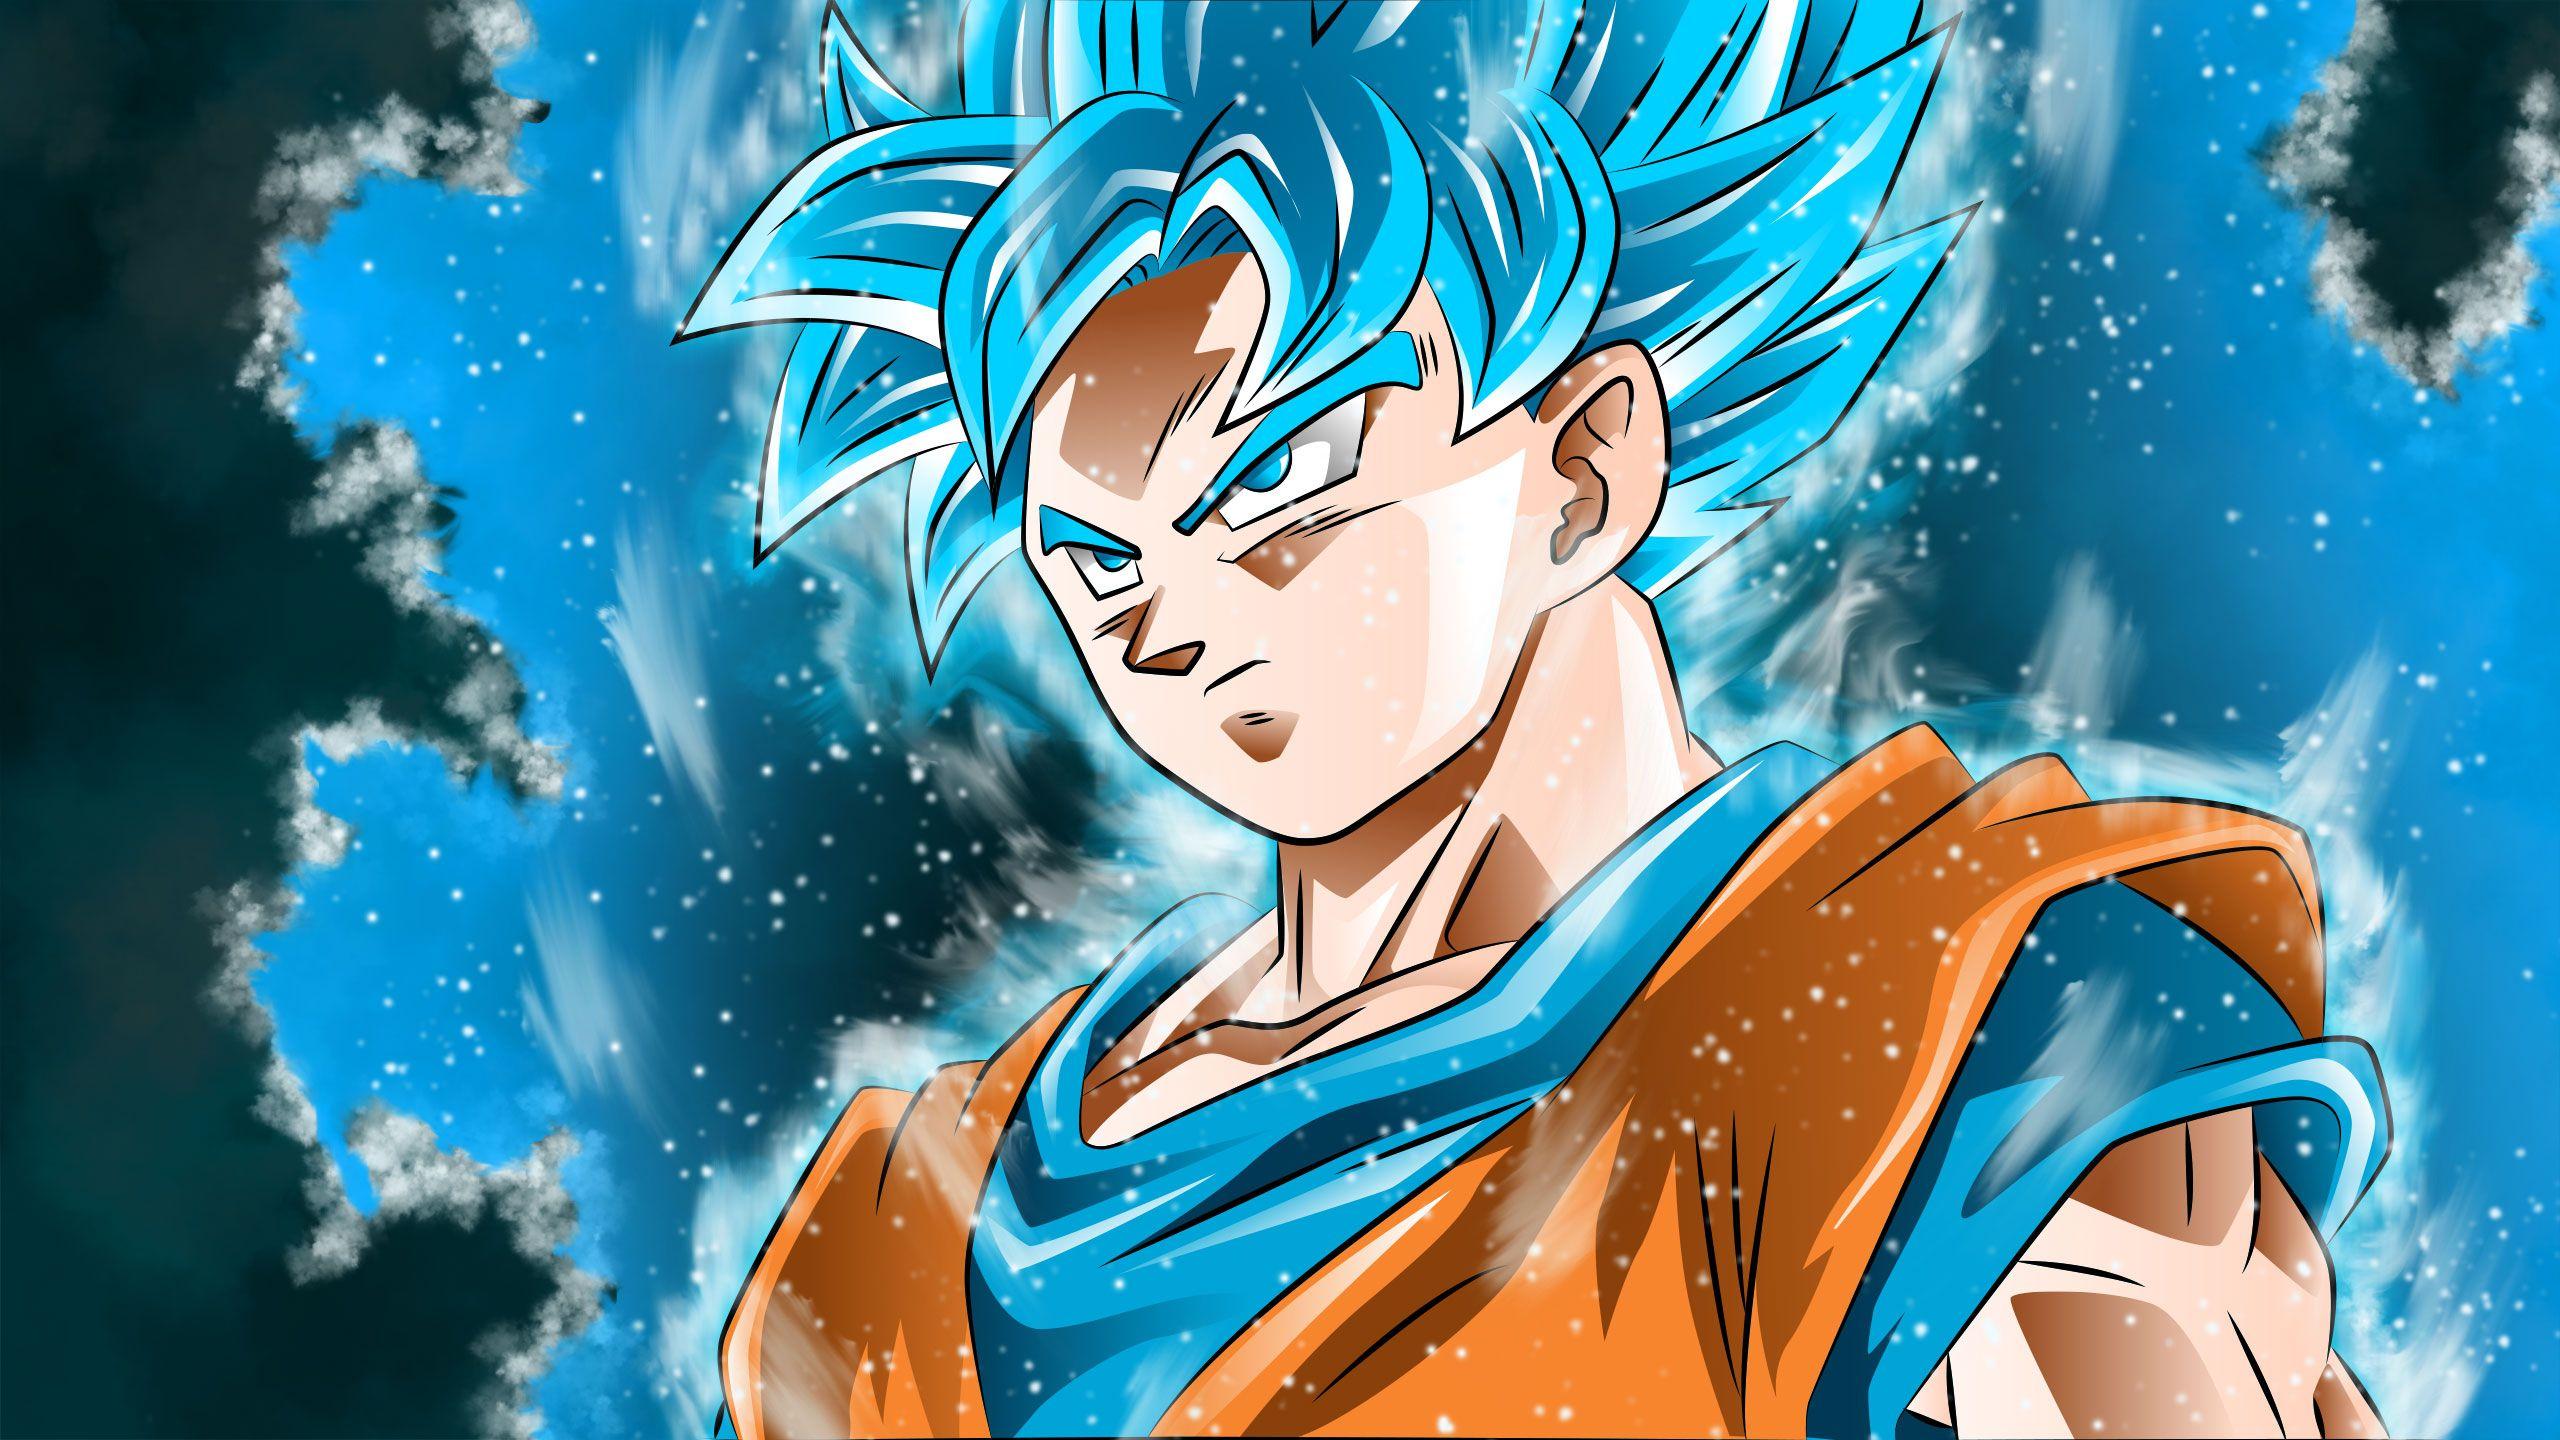 Hình ảnh hình nền miễn phí cho Son Goku Super Saiyan Blue 2560x1440 cho ý tưởng hình nền